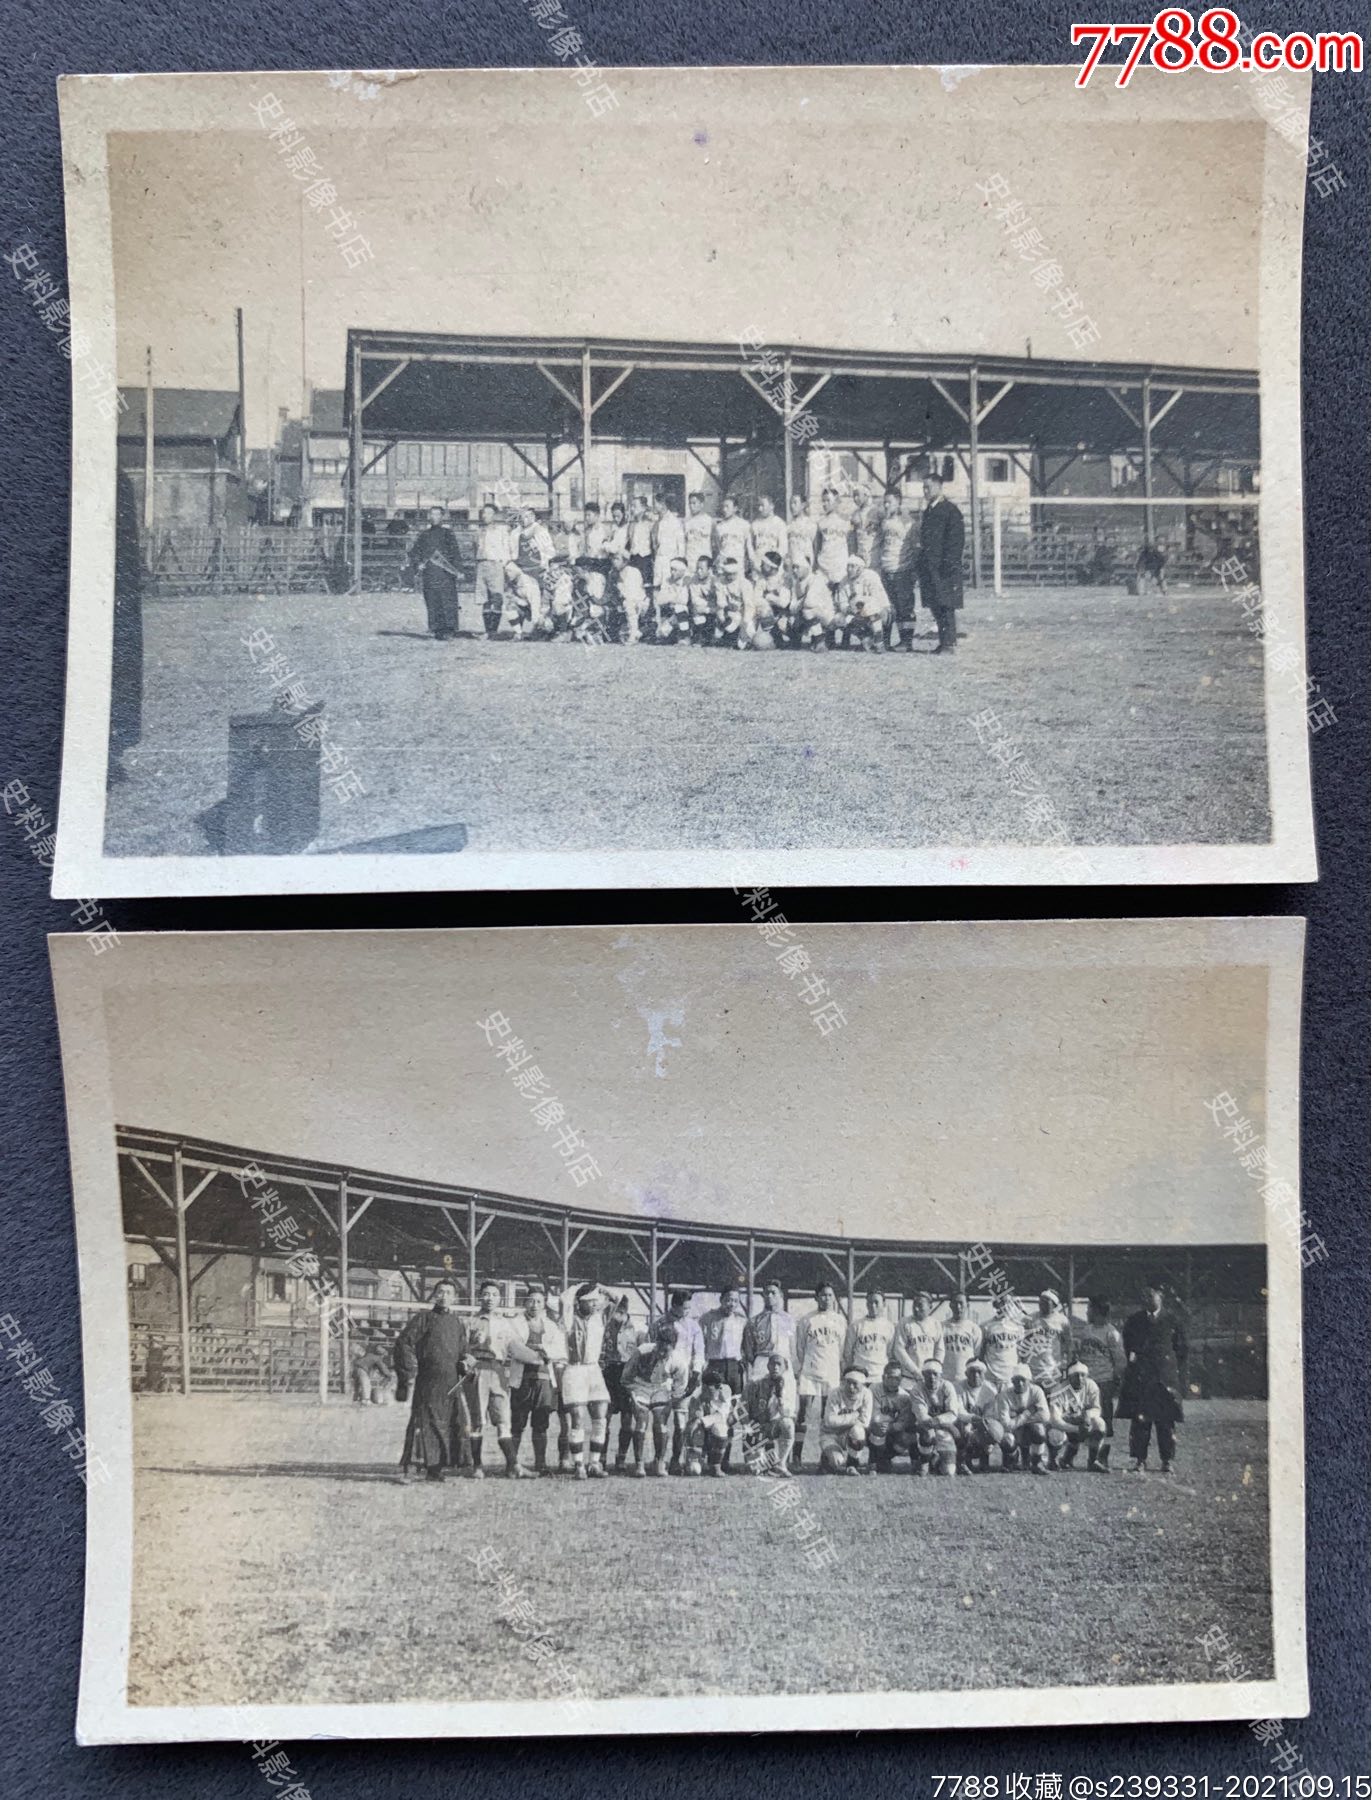 民国时期中国某高校足球队全体合影照一组两枚